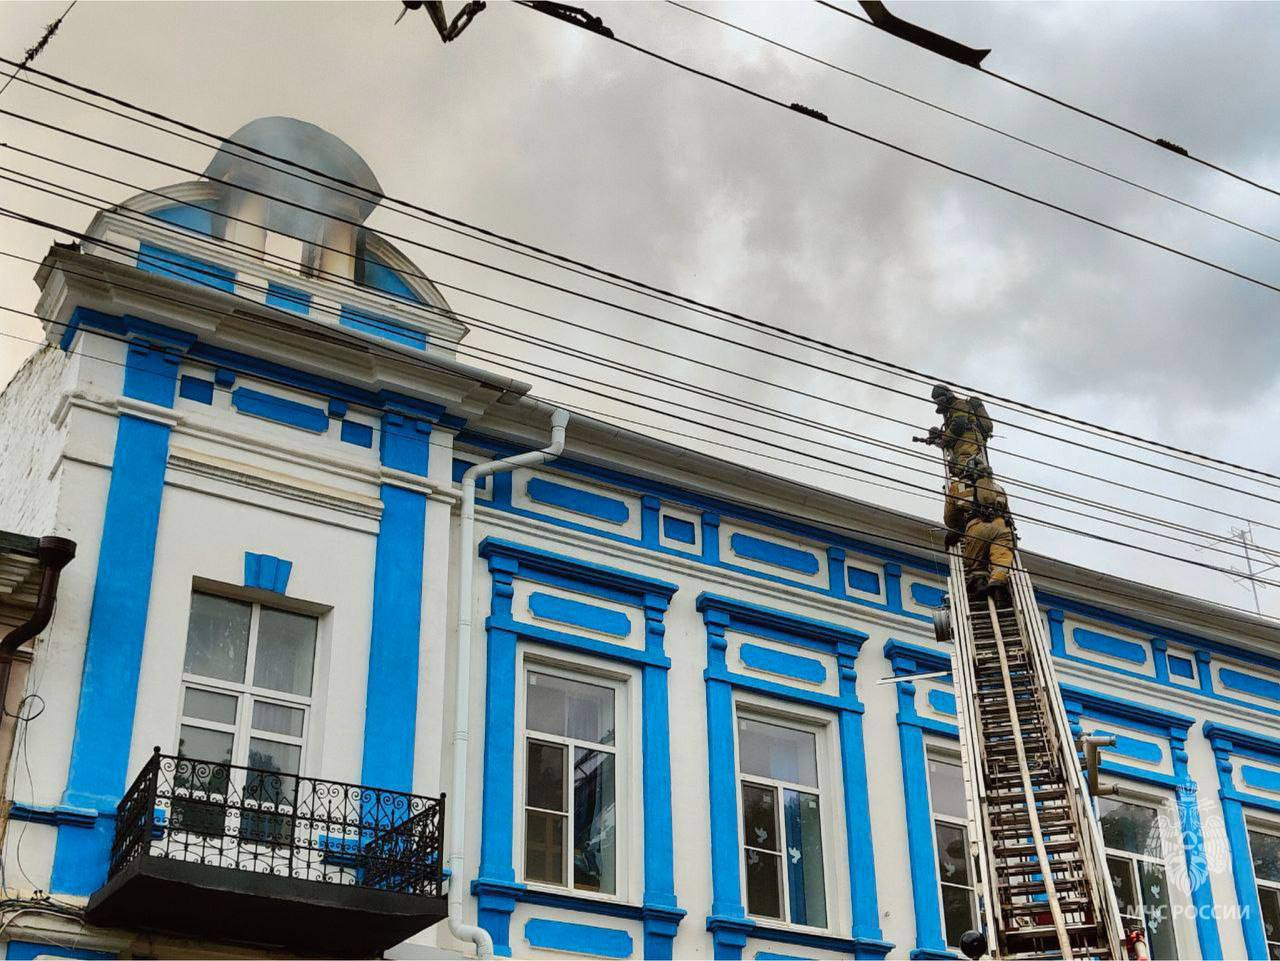 Мангал мог стать причиной пожара в историческом здании в Ставрополе